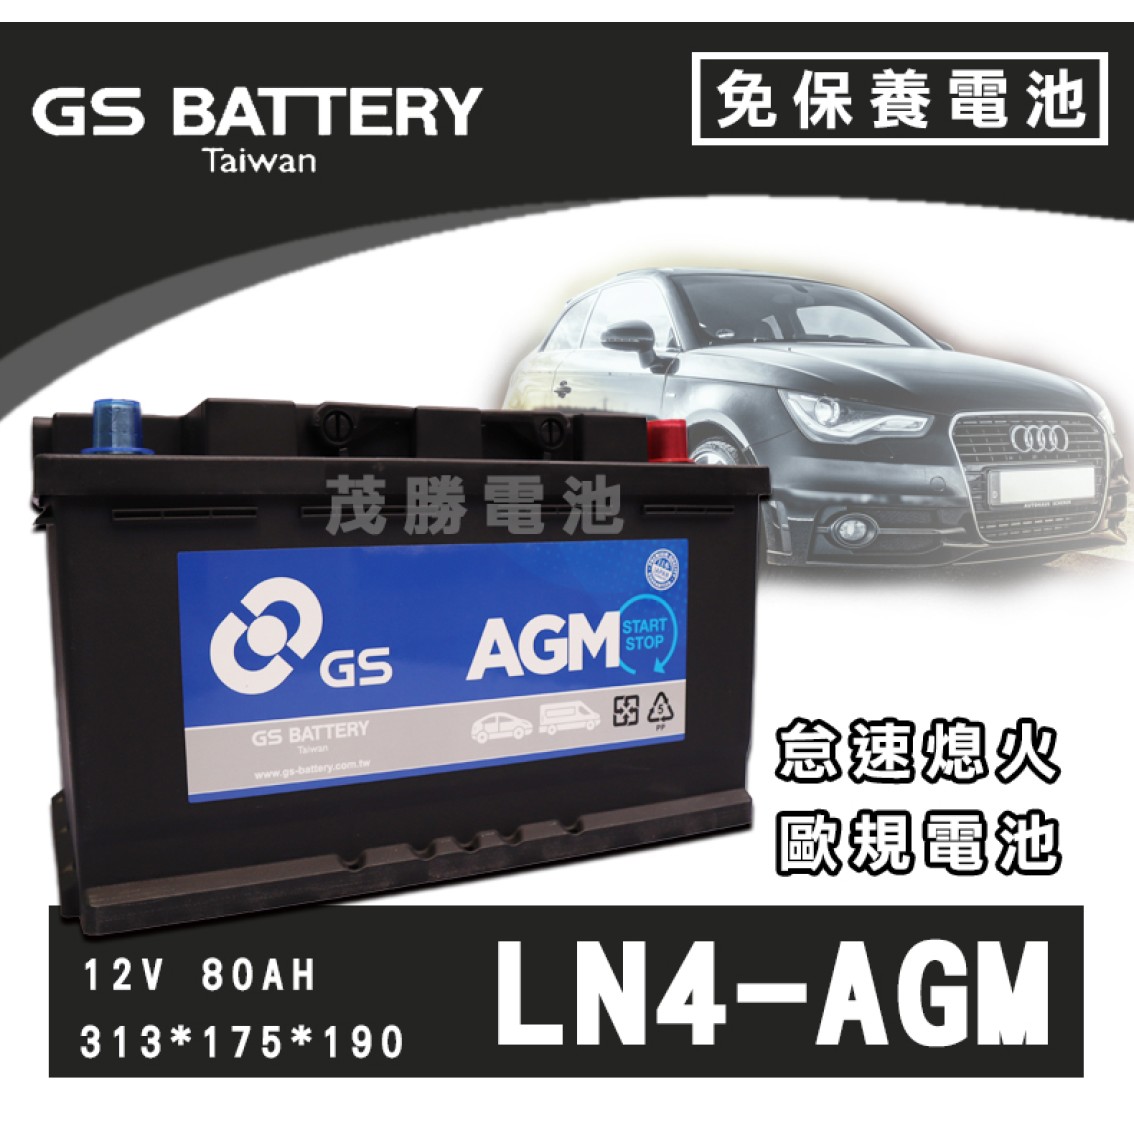 LN4-AGM